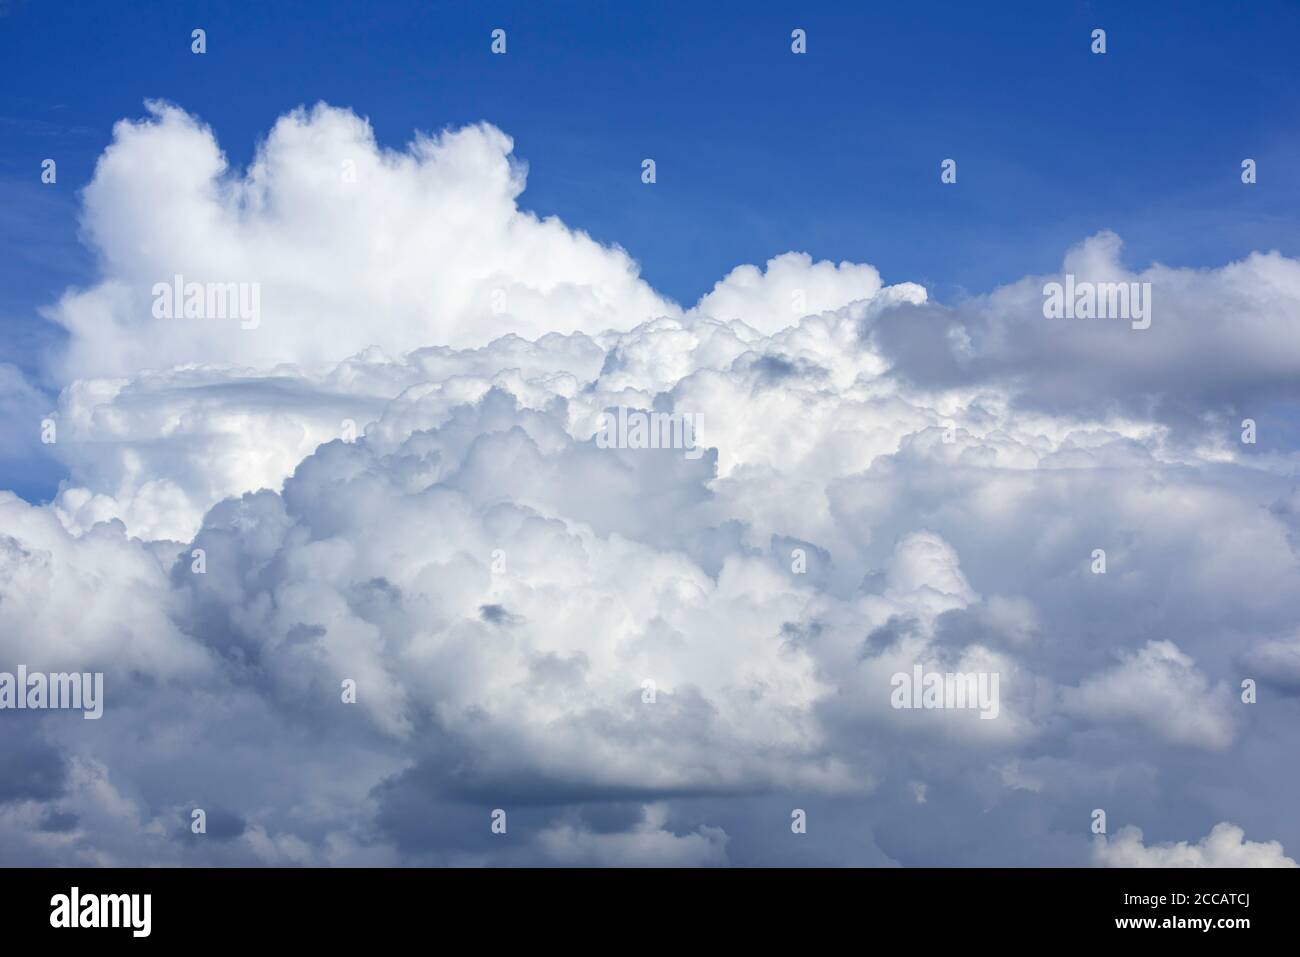 Sviluppo di Cumulus congestus nuvola conosciuta anche come torreggianti cumuli nuvole in un caldo giorno di tugndry in estate durante l'onda di calore / onda di calore Foto Stock